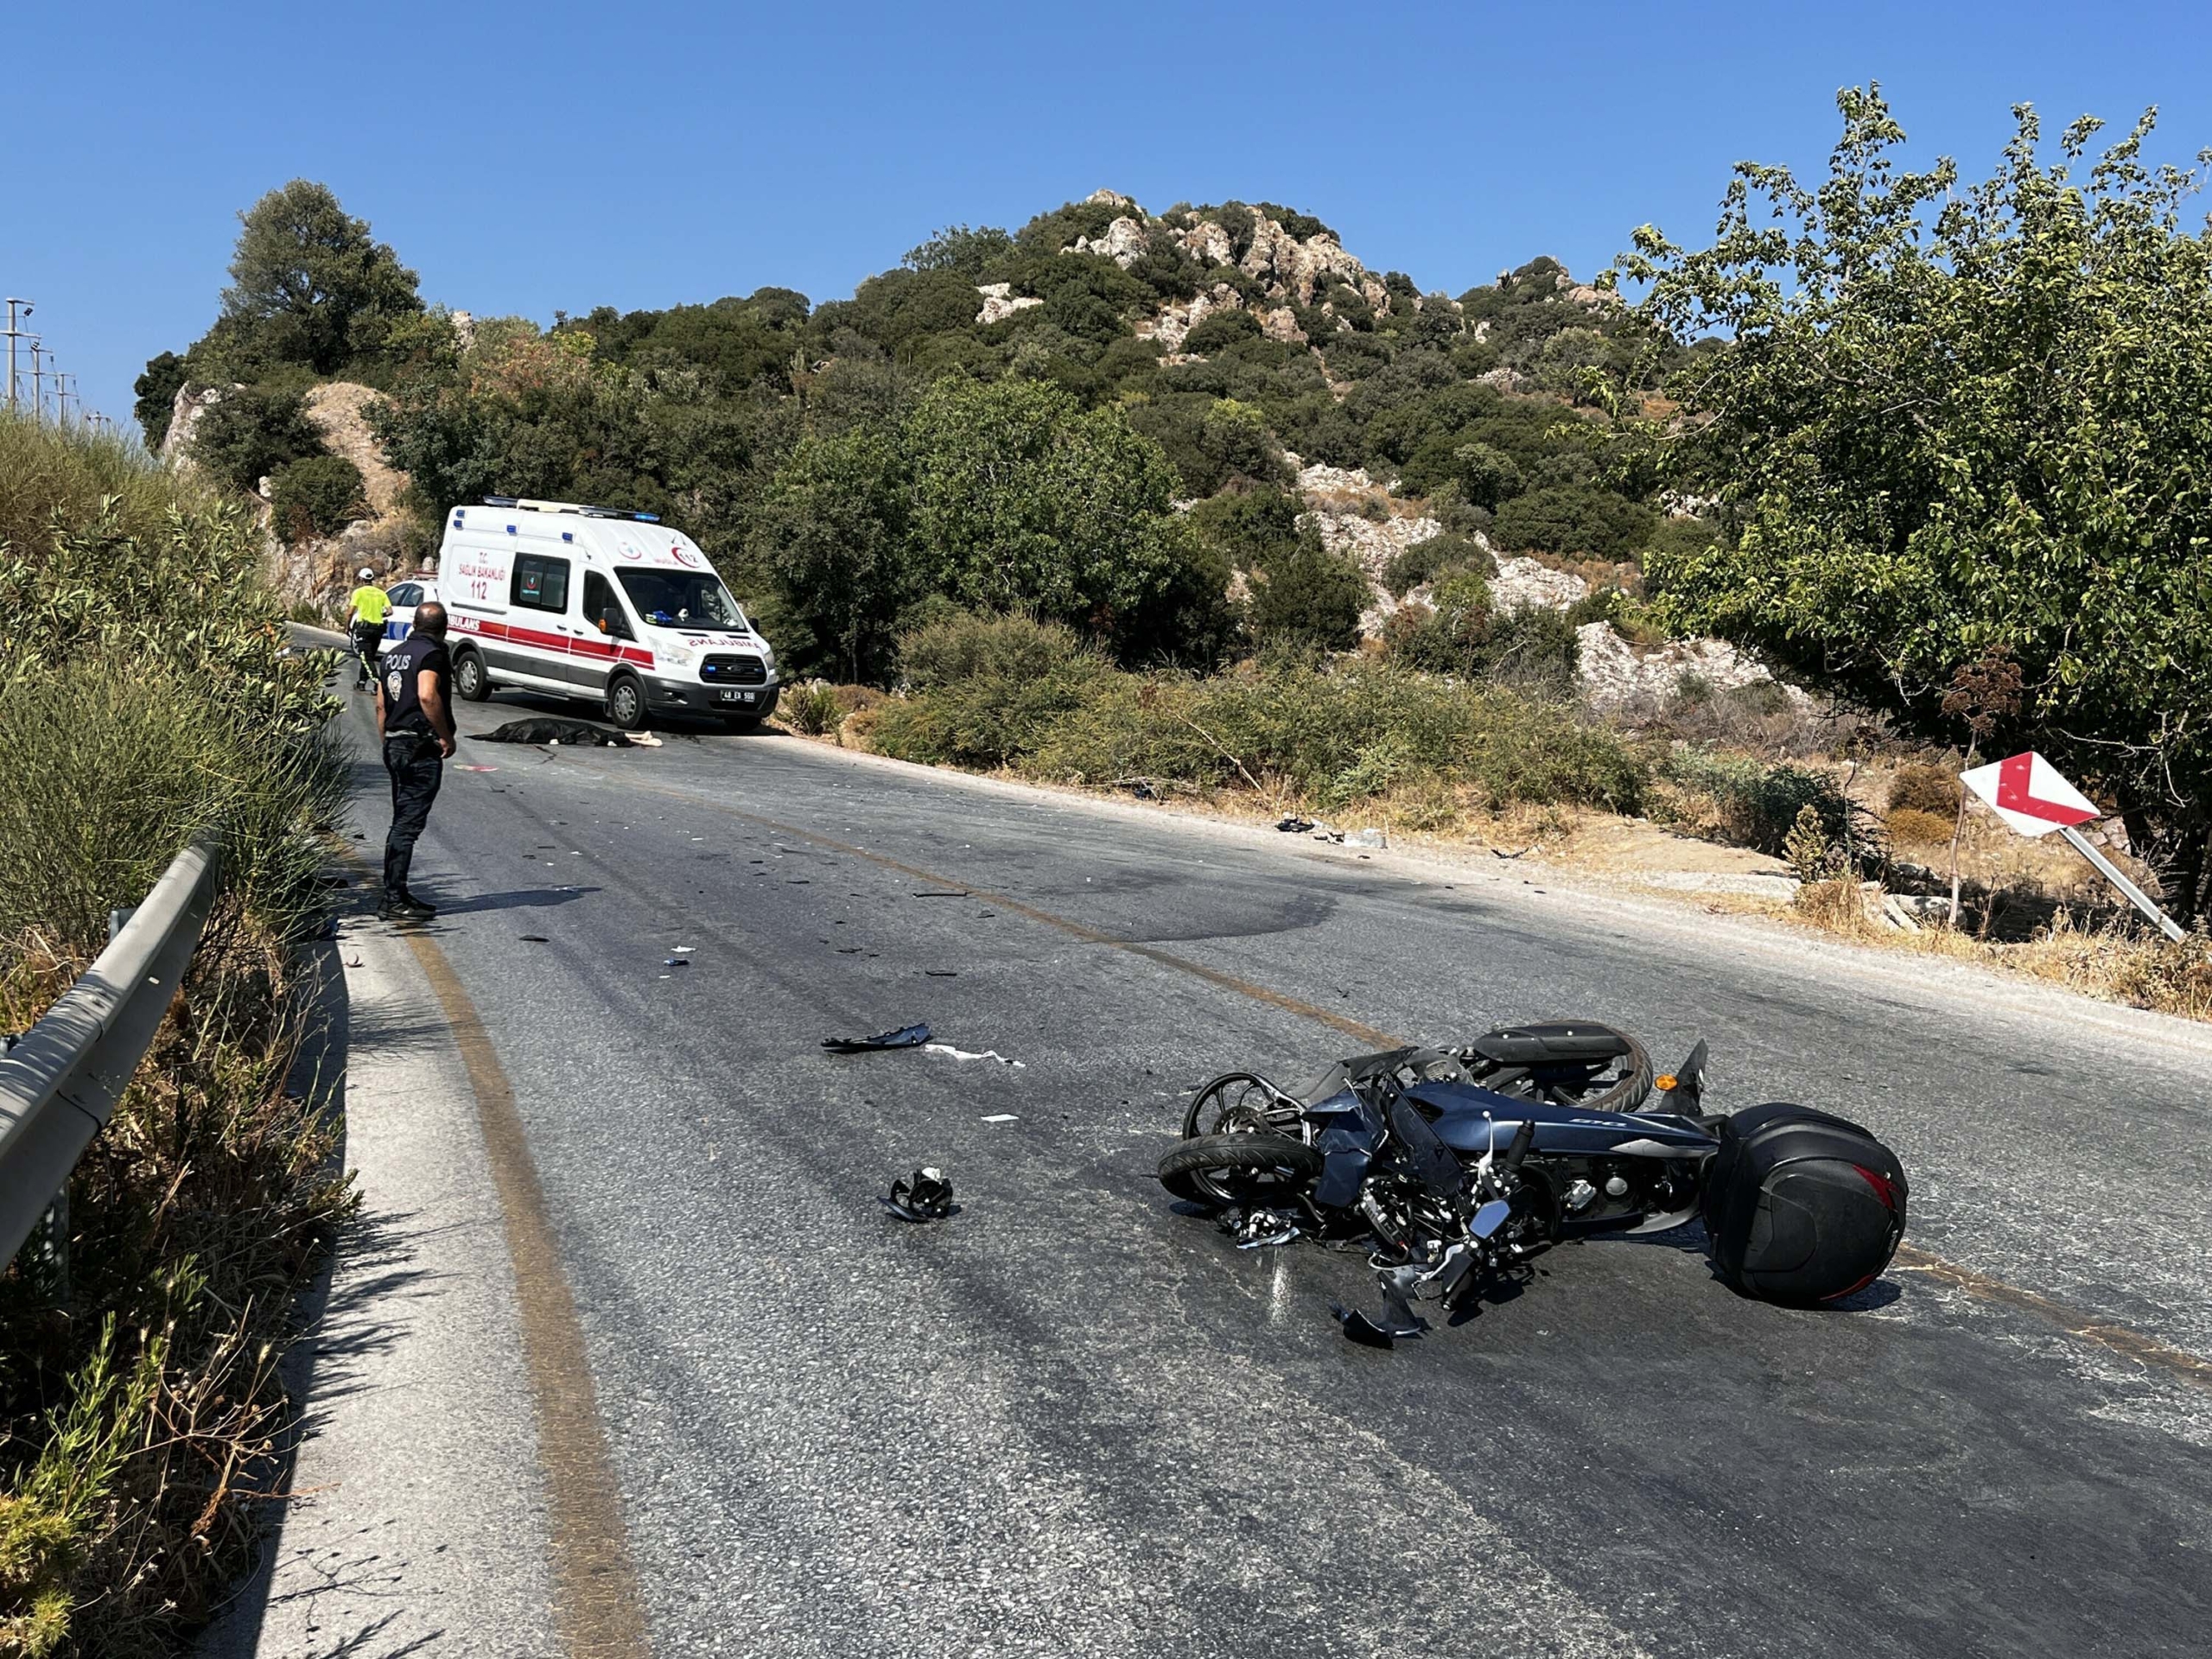 Otomobil ile motosiklet çarpıştı: 1 ölü, 2 yaralı